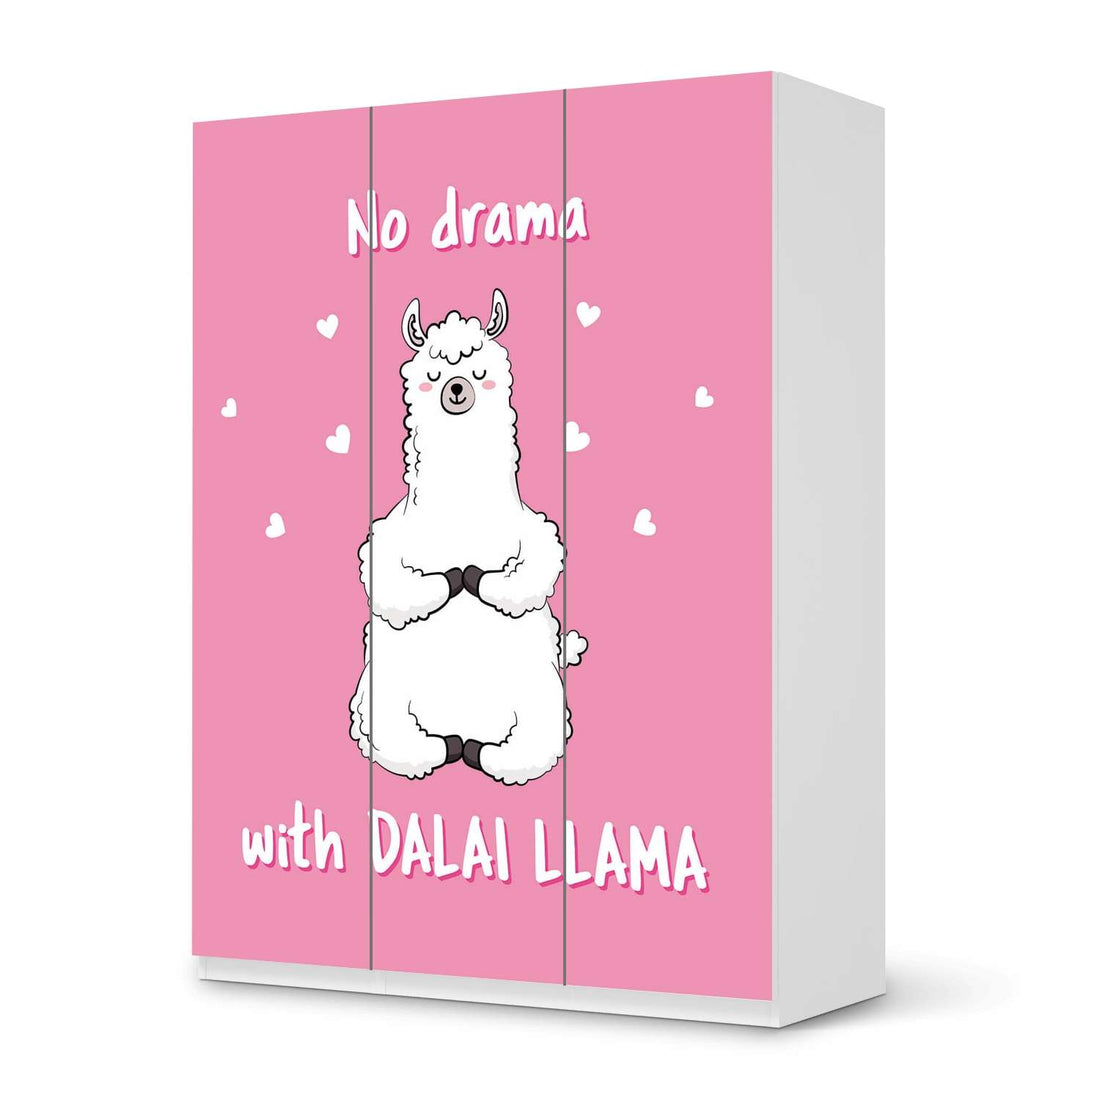 Folie für Möbel Dalai Llama - IKEA Pax Schrank 201 cm Höhe - 3 Türen - weiss